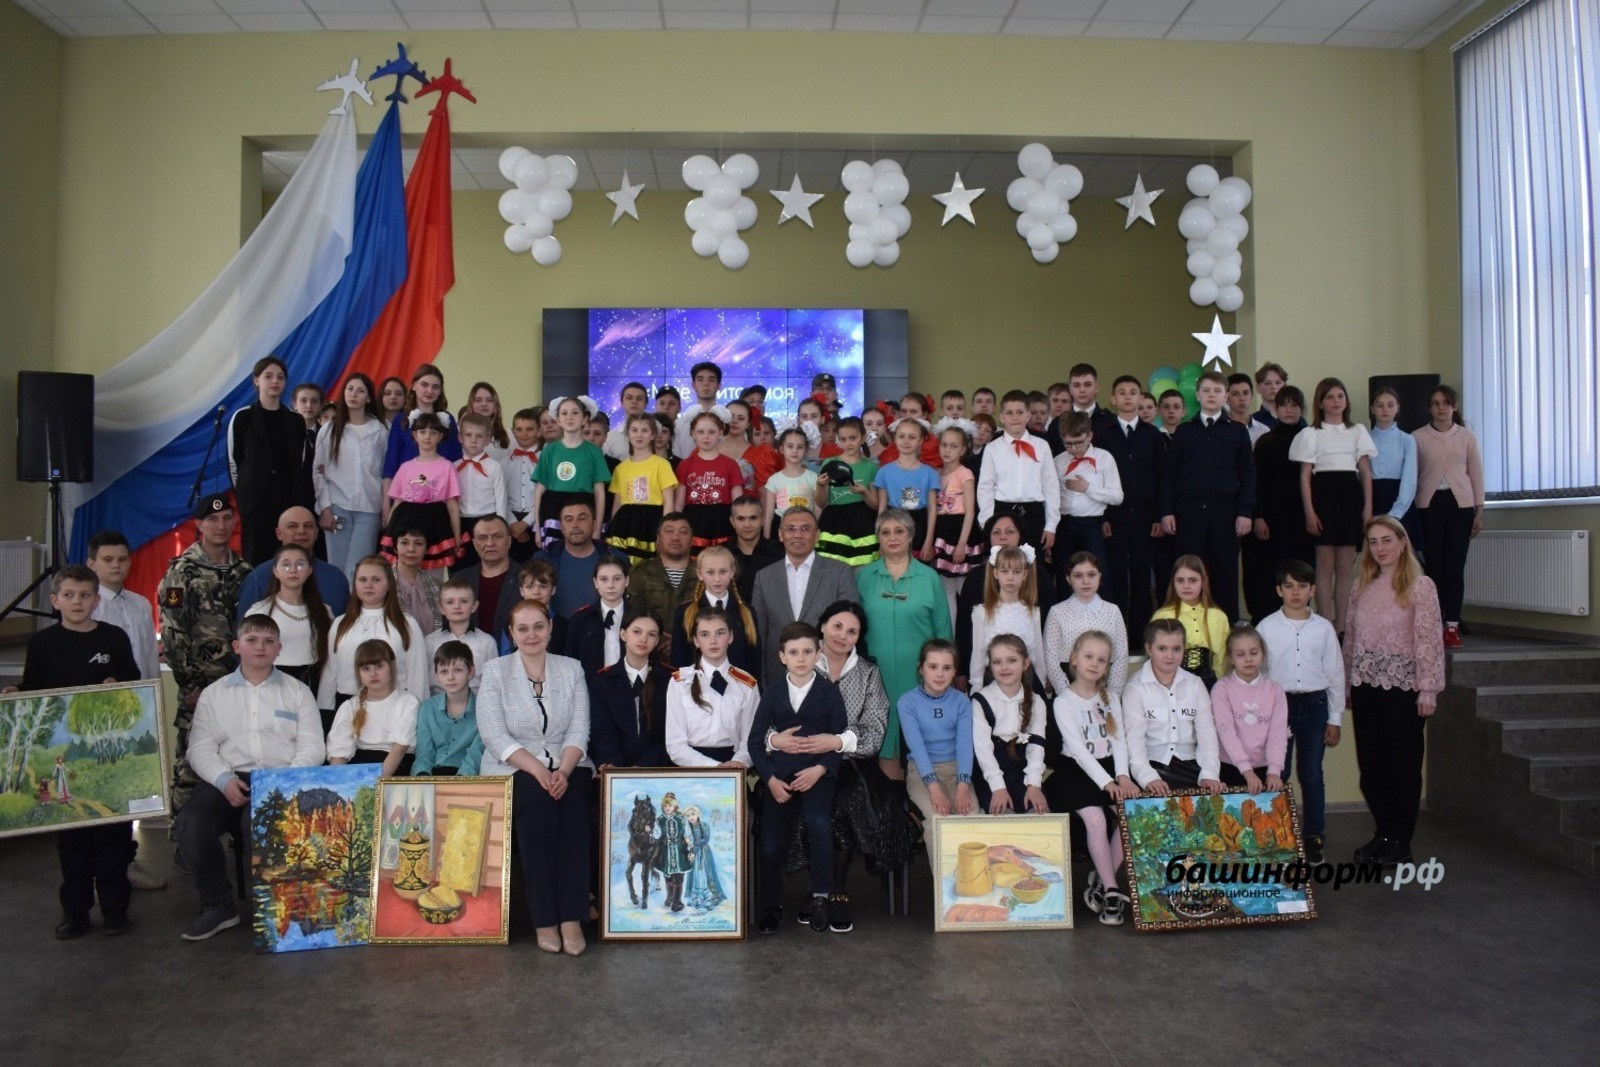 Картины от жителей Башкирии презентовали образовательному учреждению в Красном Луче